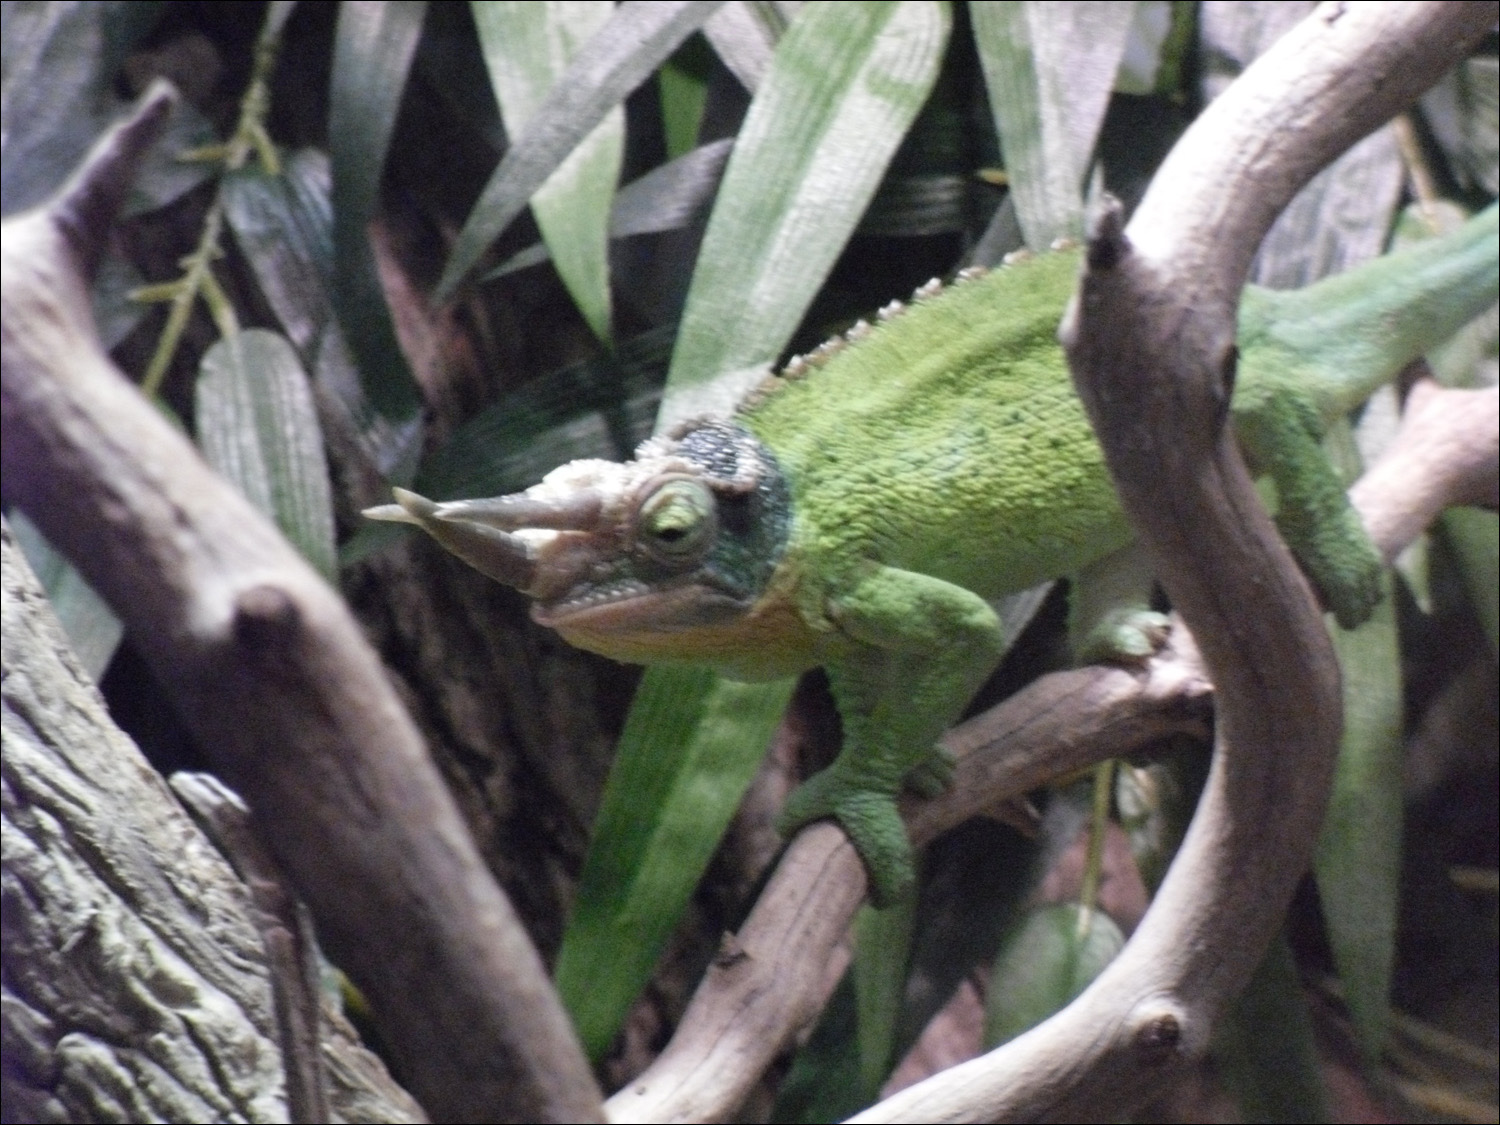 horned male chameleon